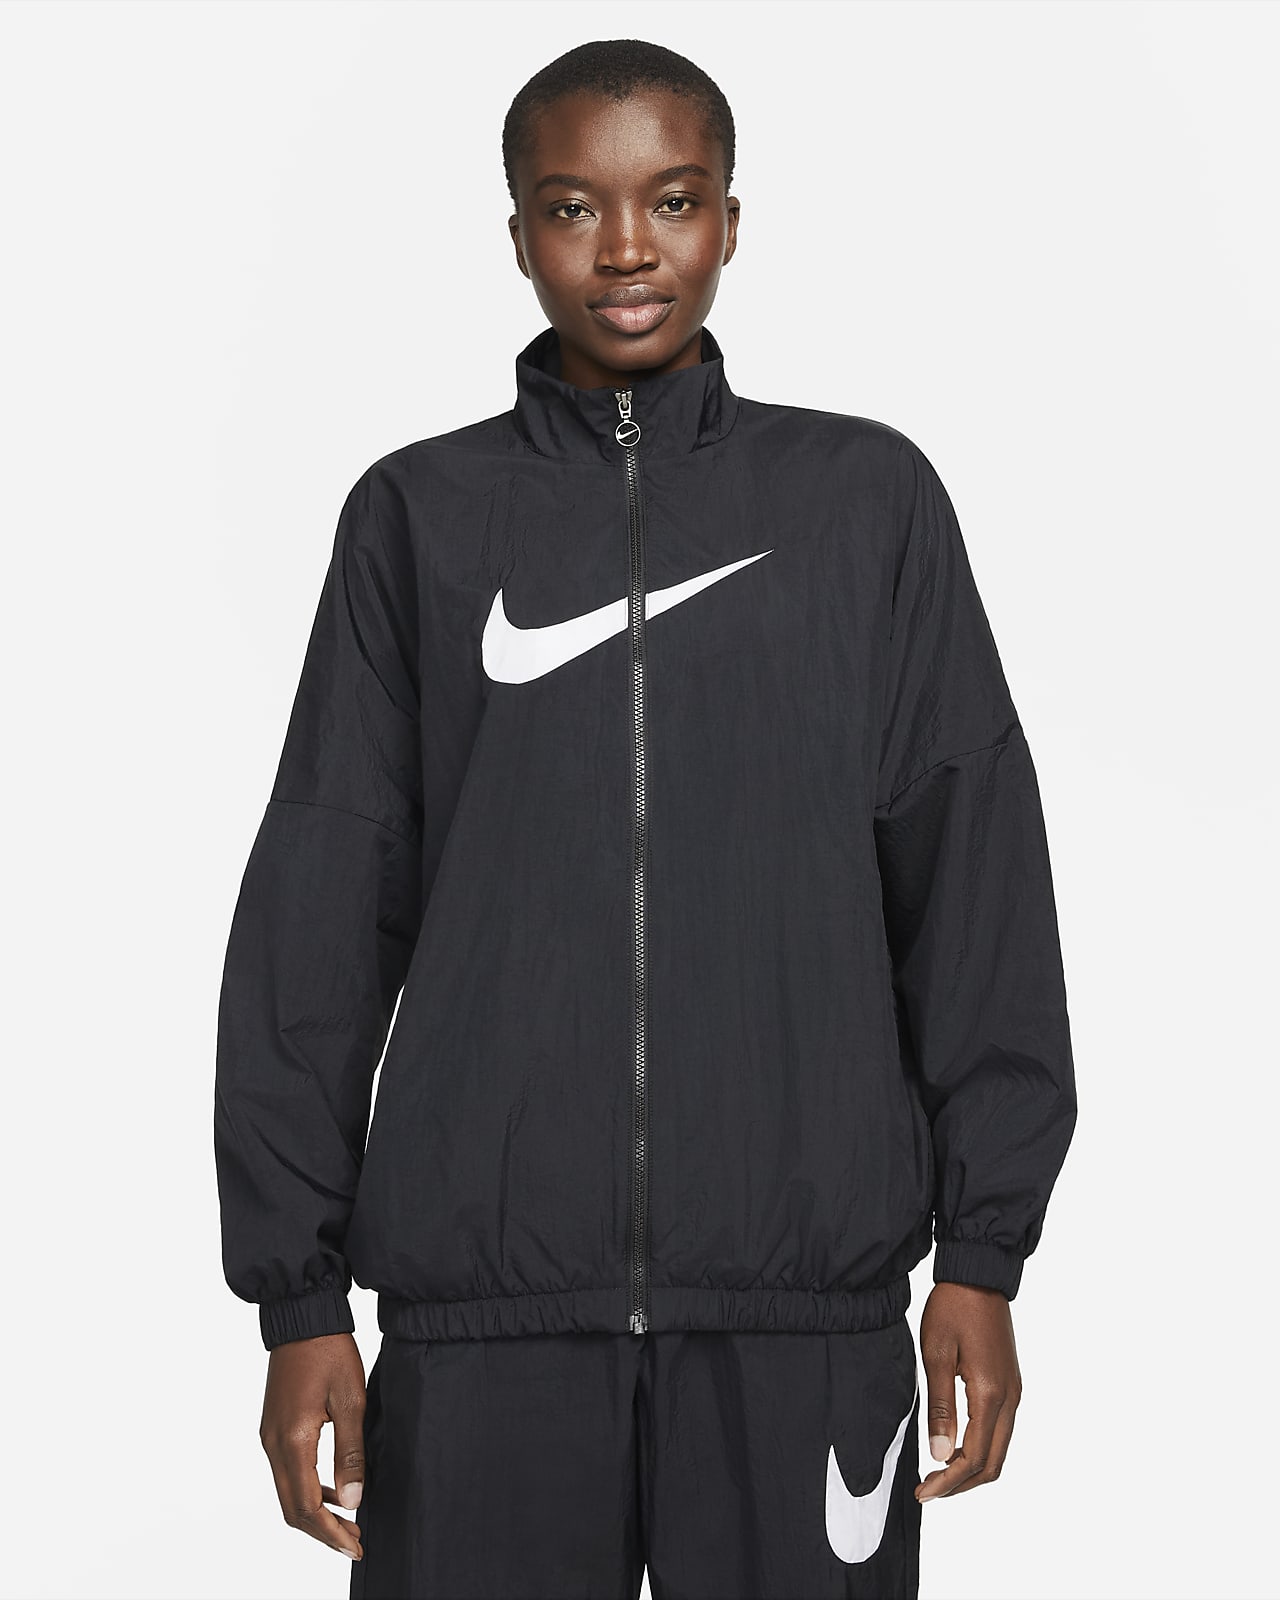 Medfølelse Møde fusion Nike Sportswear Essential Women's Woven Jacket. Nike.com